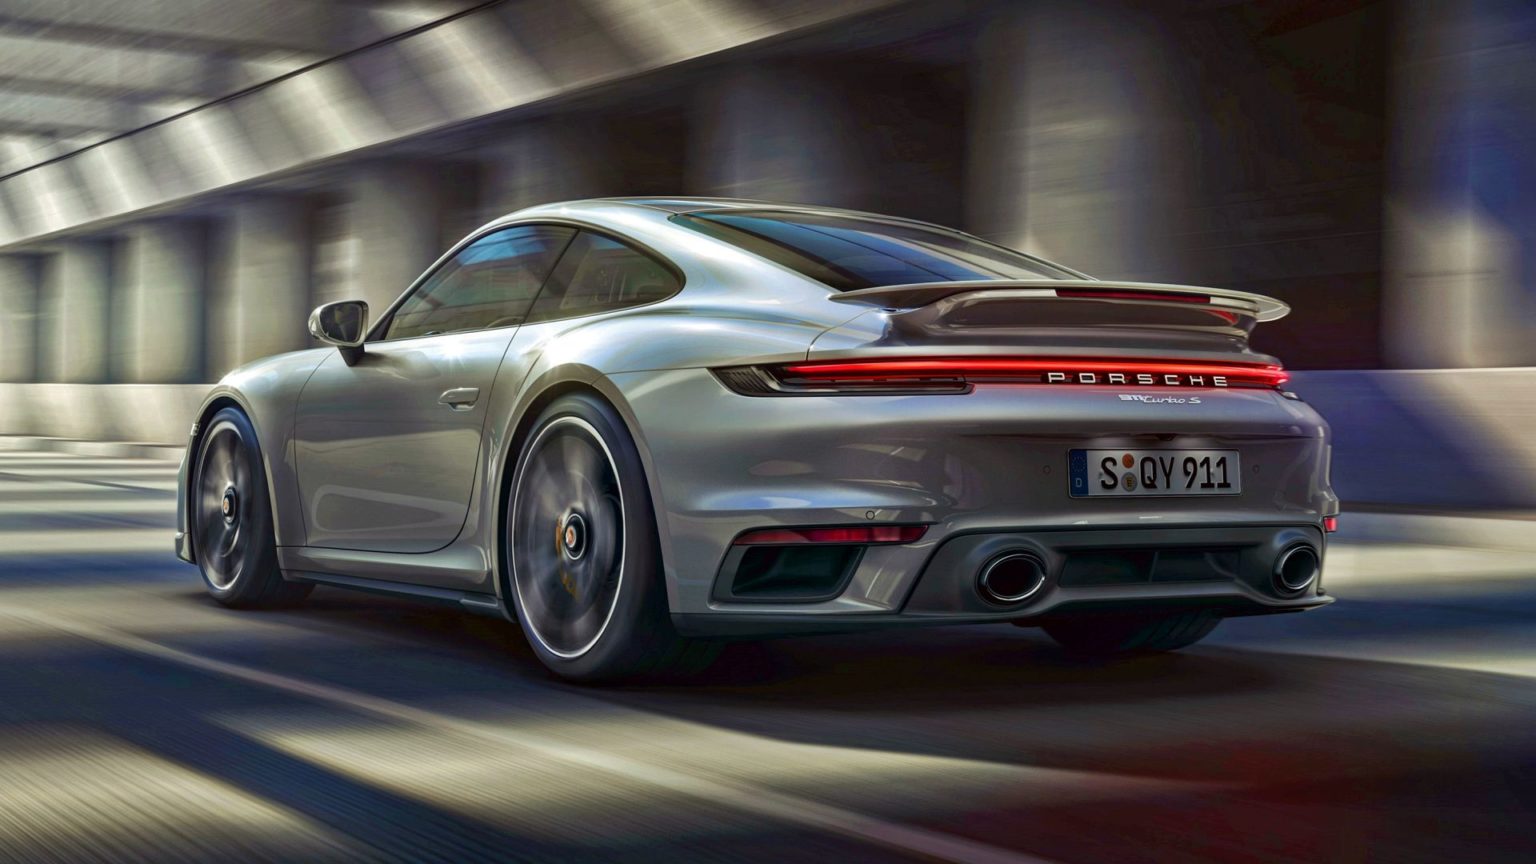 Nowe Porsche 911 Turbo S ma 650 KM i kosztuje ponad milion zł